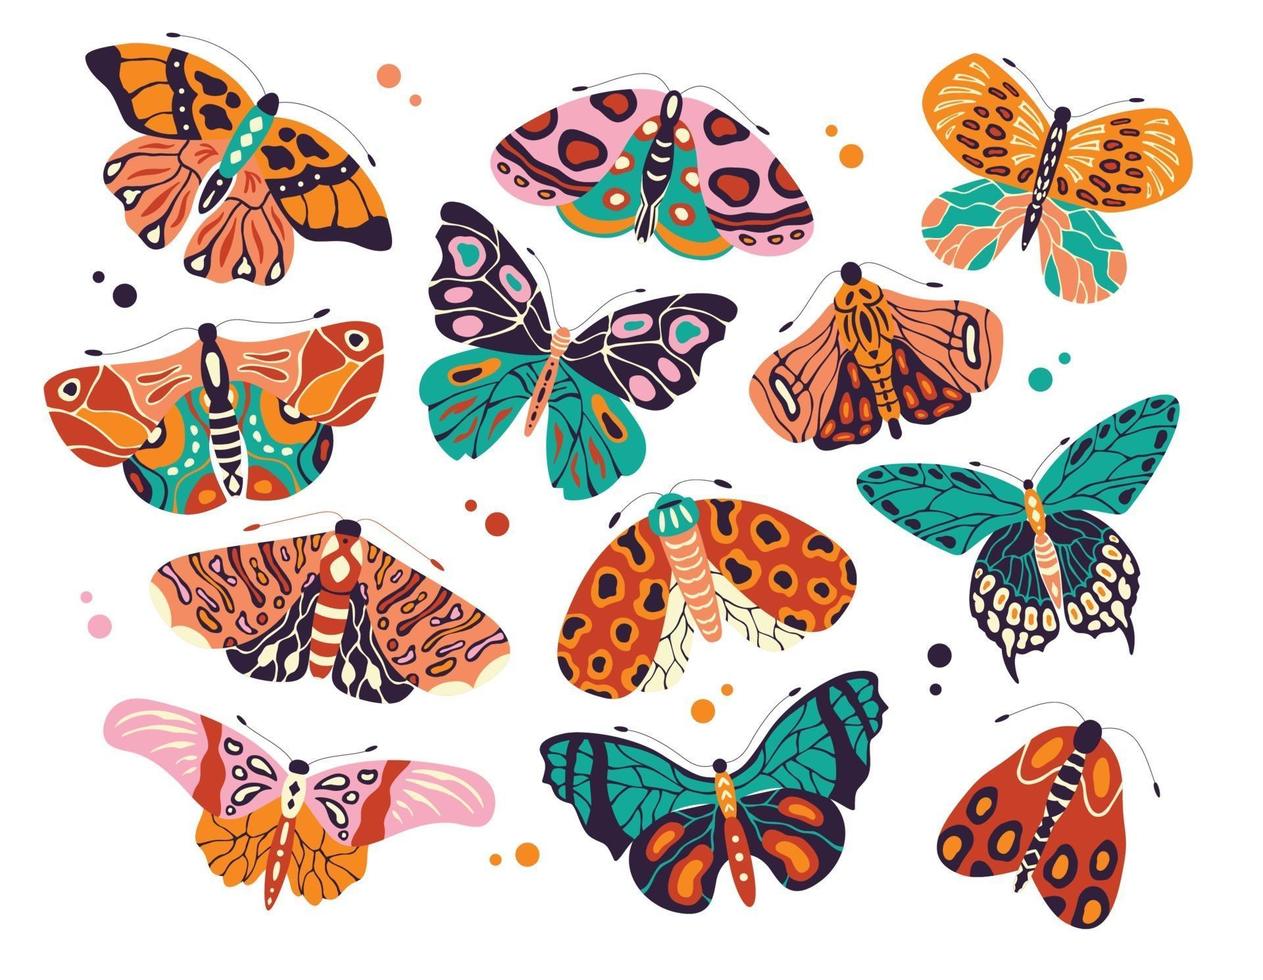 Sammlung von bunten handgezeichneten Schmetterlingen und Motten auf weißem Hintergrund. stilisierte fliegende Insekten, Vektorillustration. vektor